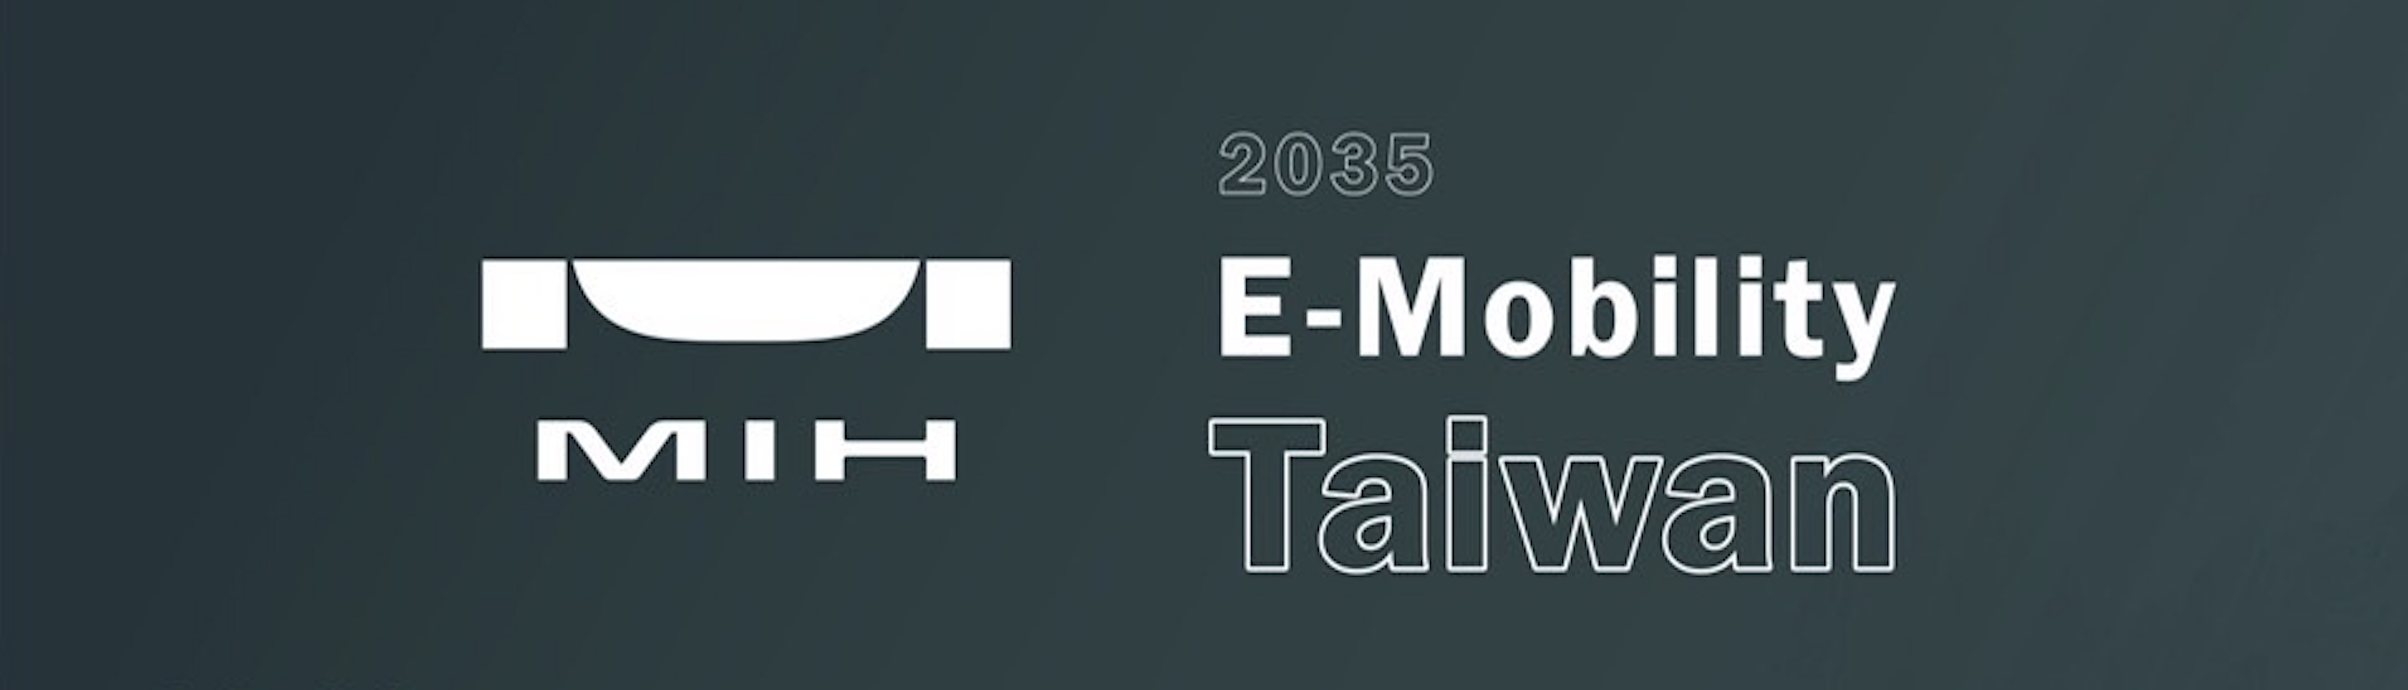 MIH Programs @ 2035 E-Mobility Taiwan